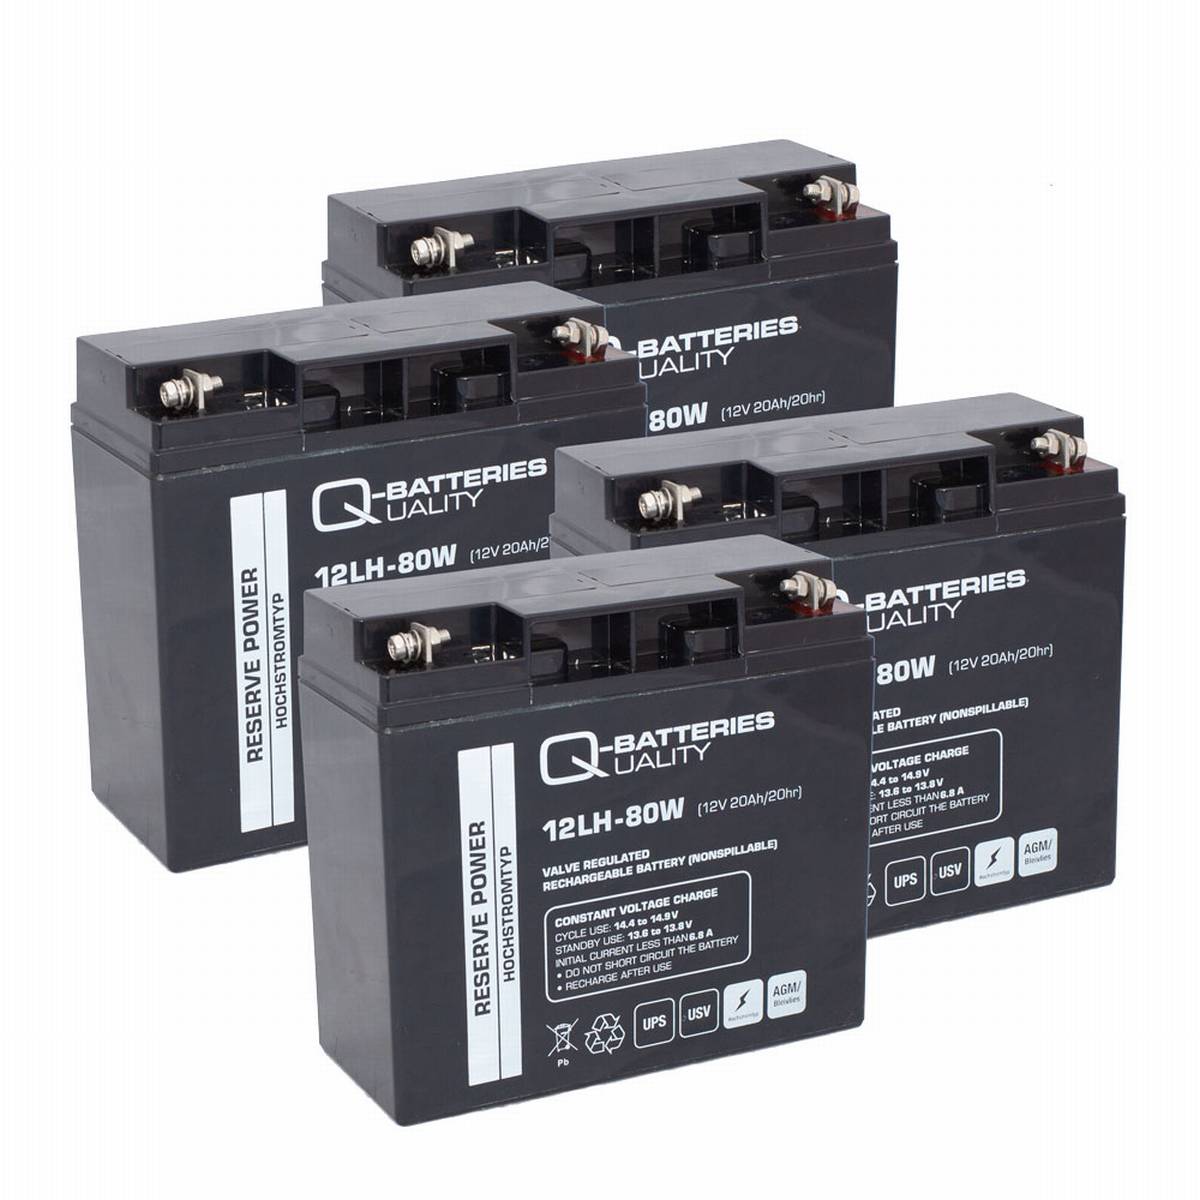 Batteria di ricambio RBC11, RBC55 per sistemi UPS di APC 12V 18Ah